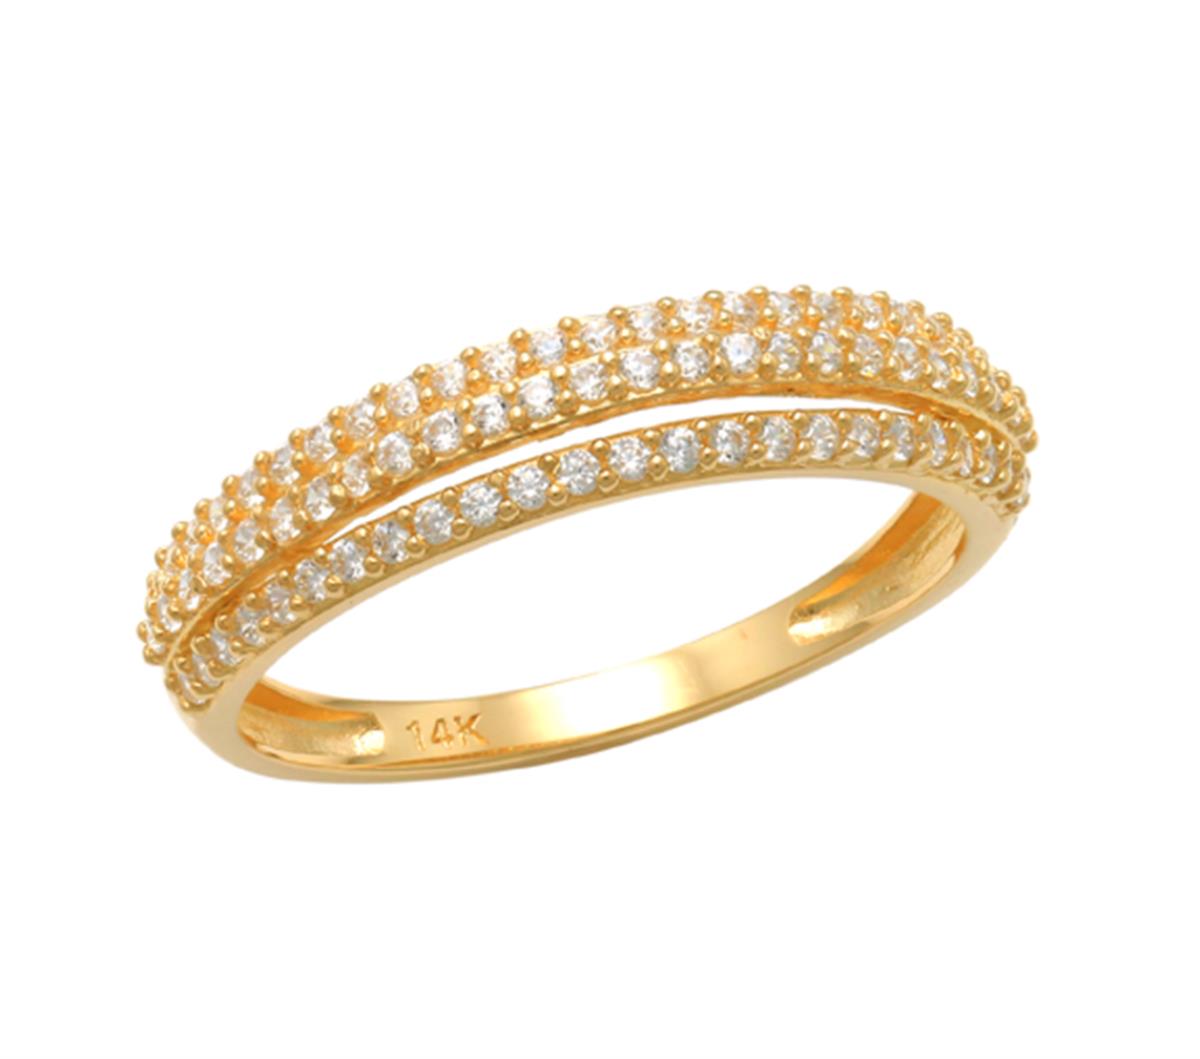 10K Yellow Gold Fashion 3 Row White CZ Ring